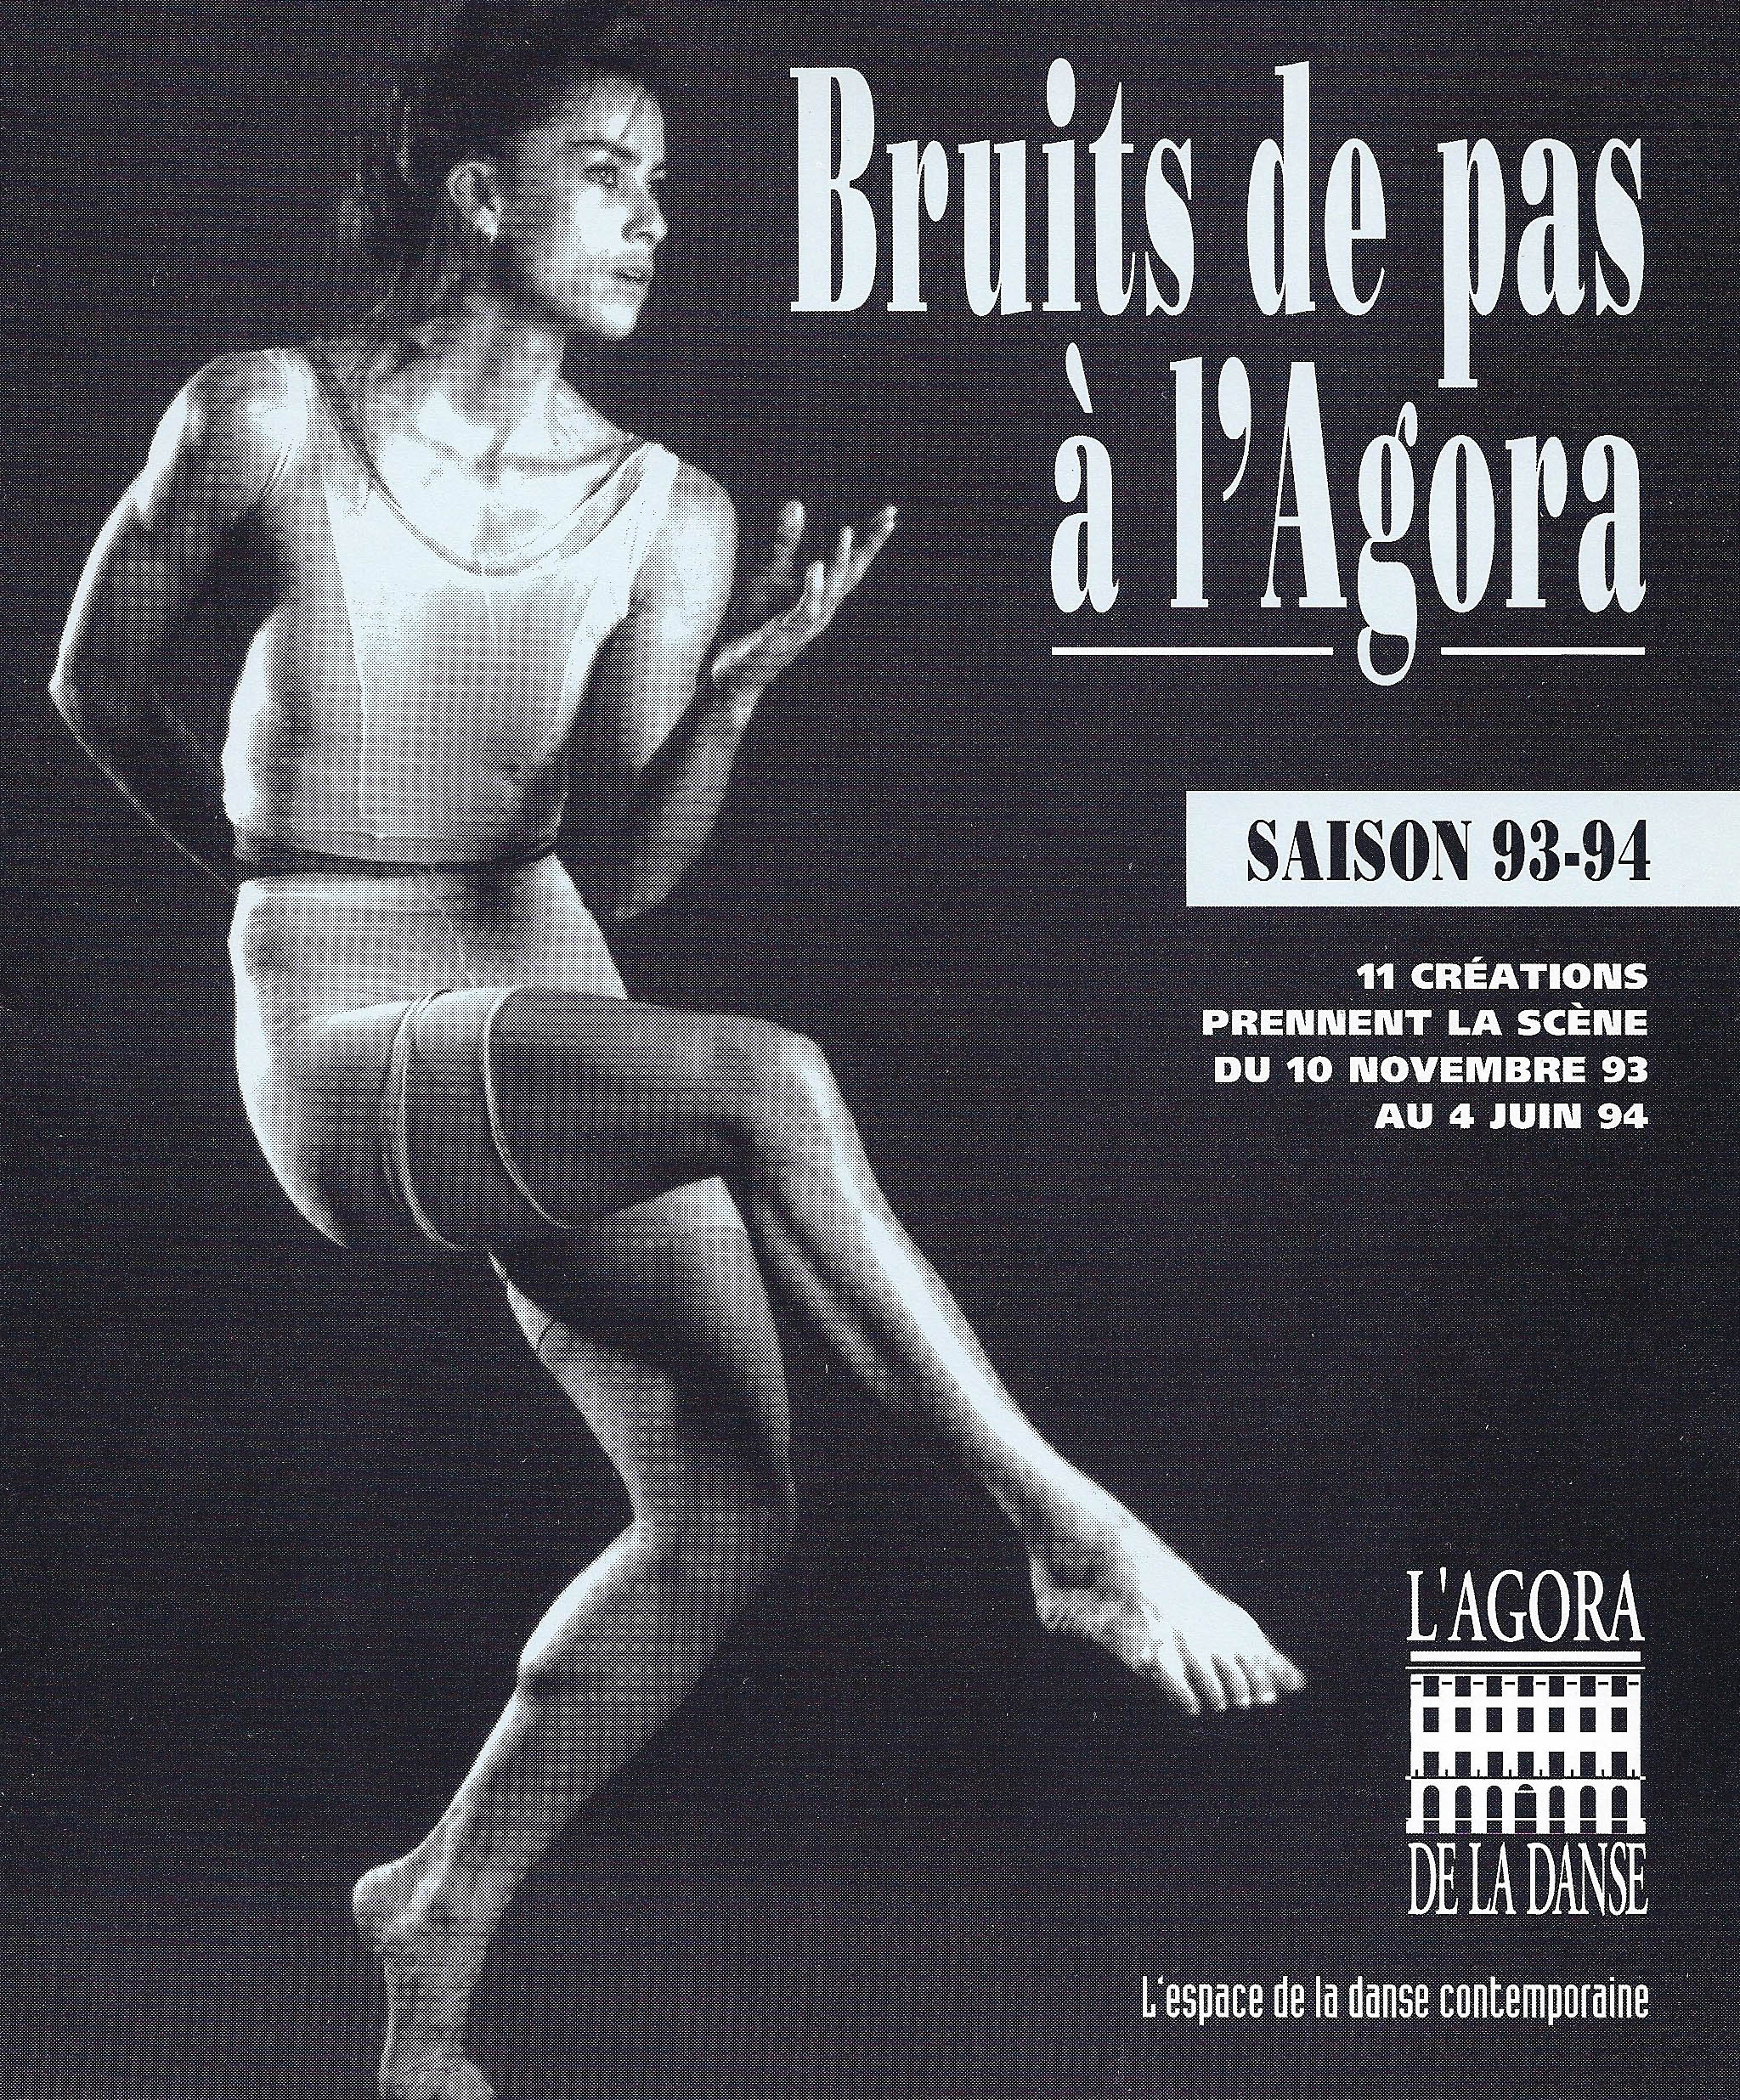 programme automne + hiver 1993- 1994 Agora de la danse Agora de la danse programme Automne + Hiver 1993-1994 Bruits de pas à l'Agora de la danse